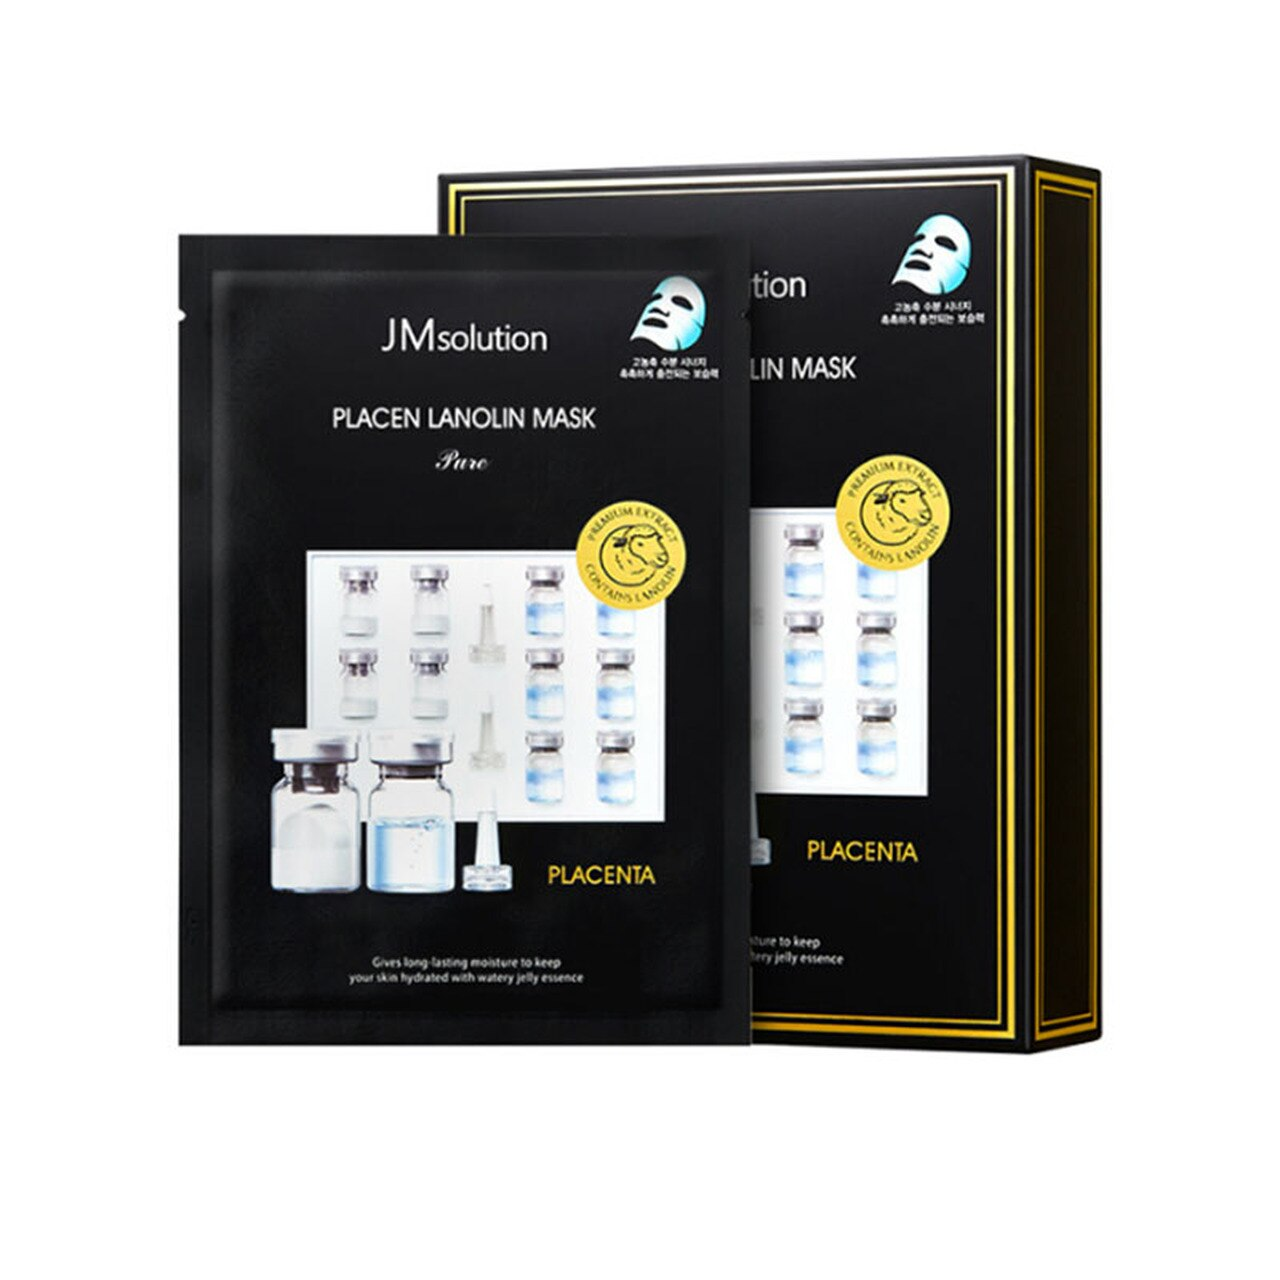 jm-solution-placen-lanolin-mask-pure-box